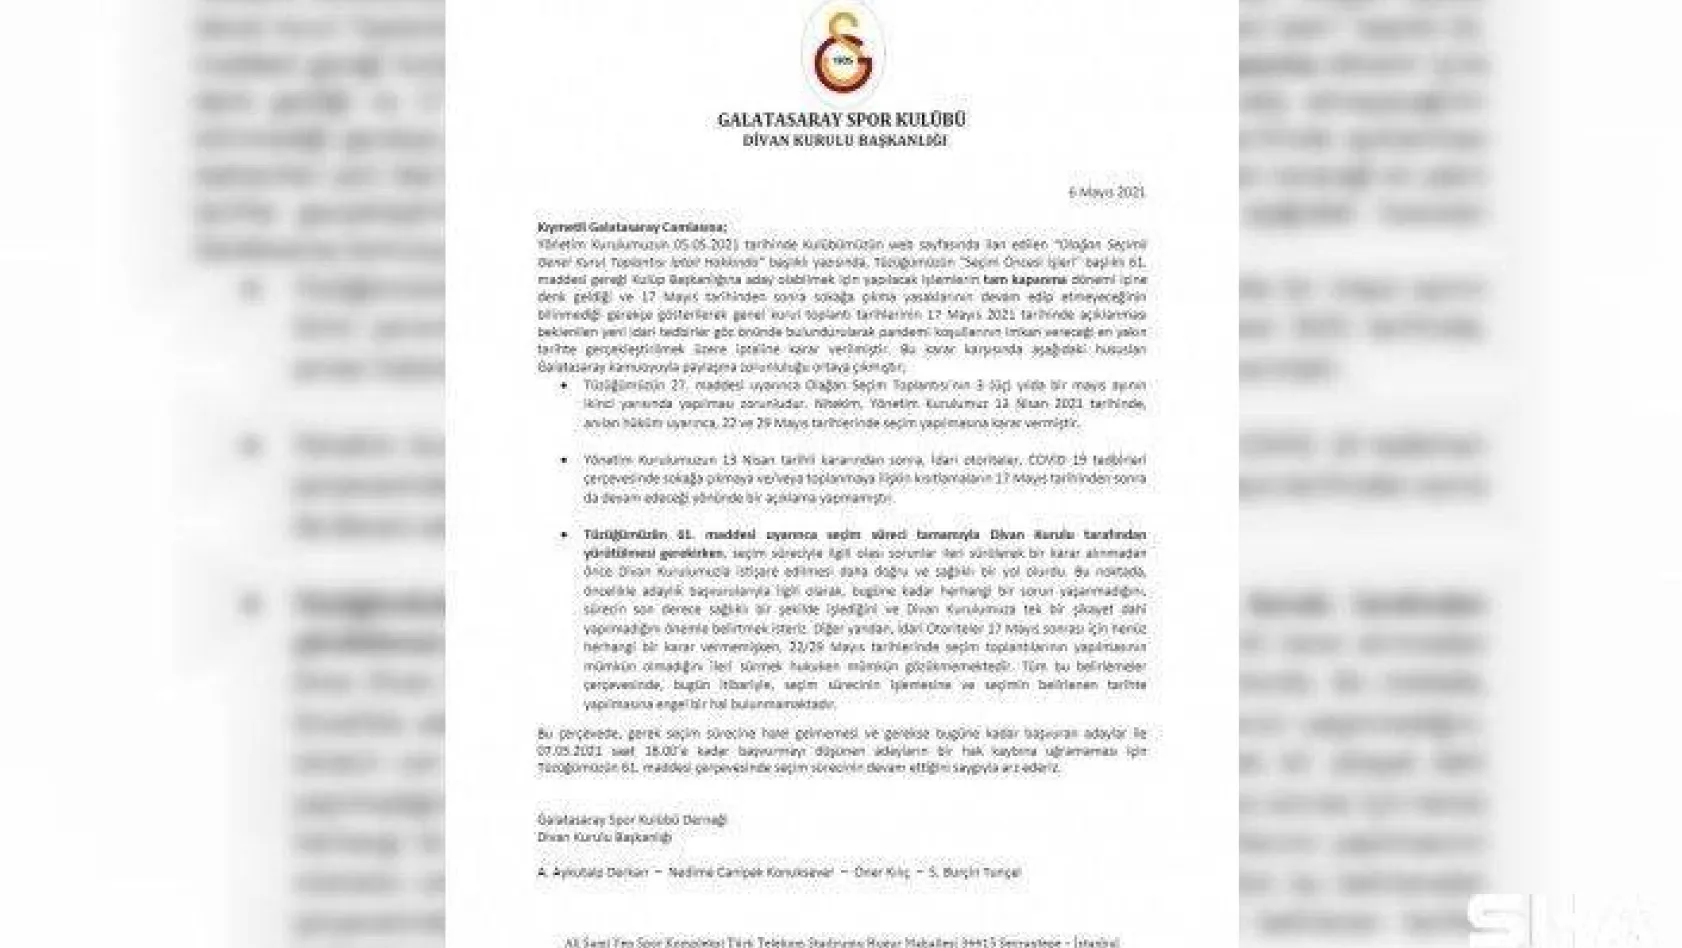 Galatasaray Divan Kurulu Başkanlığı: &quotSeçimin belirlenen tarihte yapılmasına engel bir hal bulunmamaktadır"